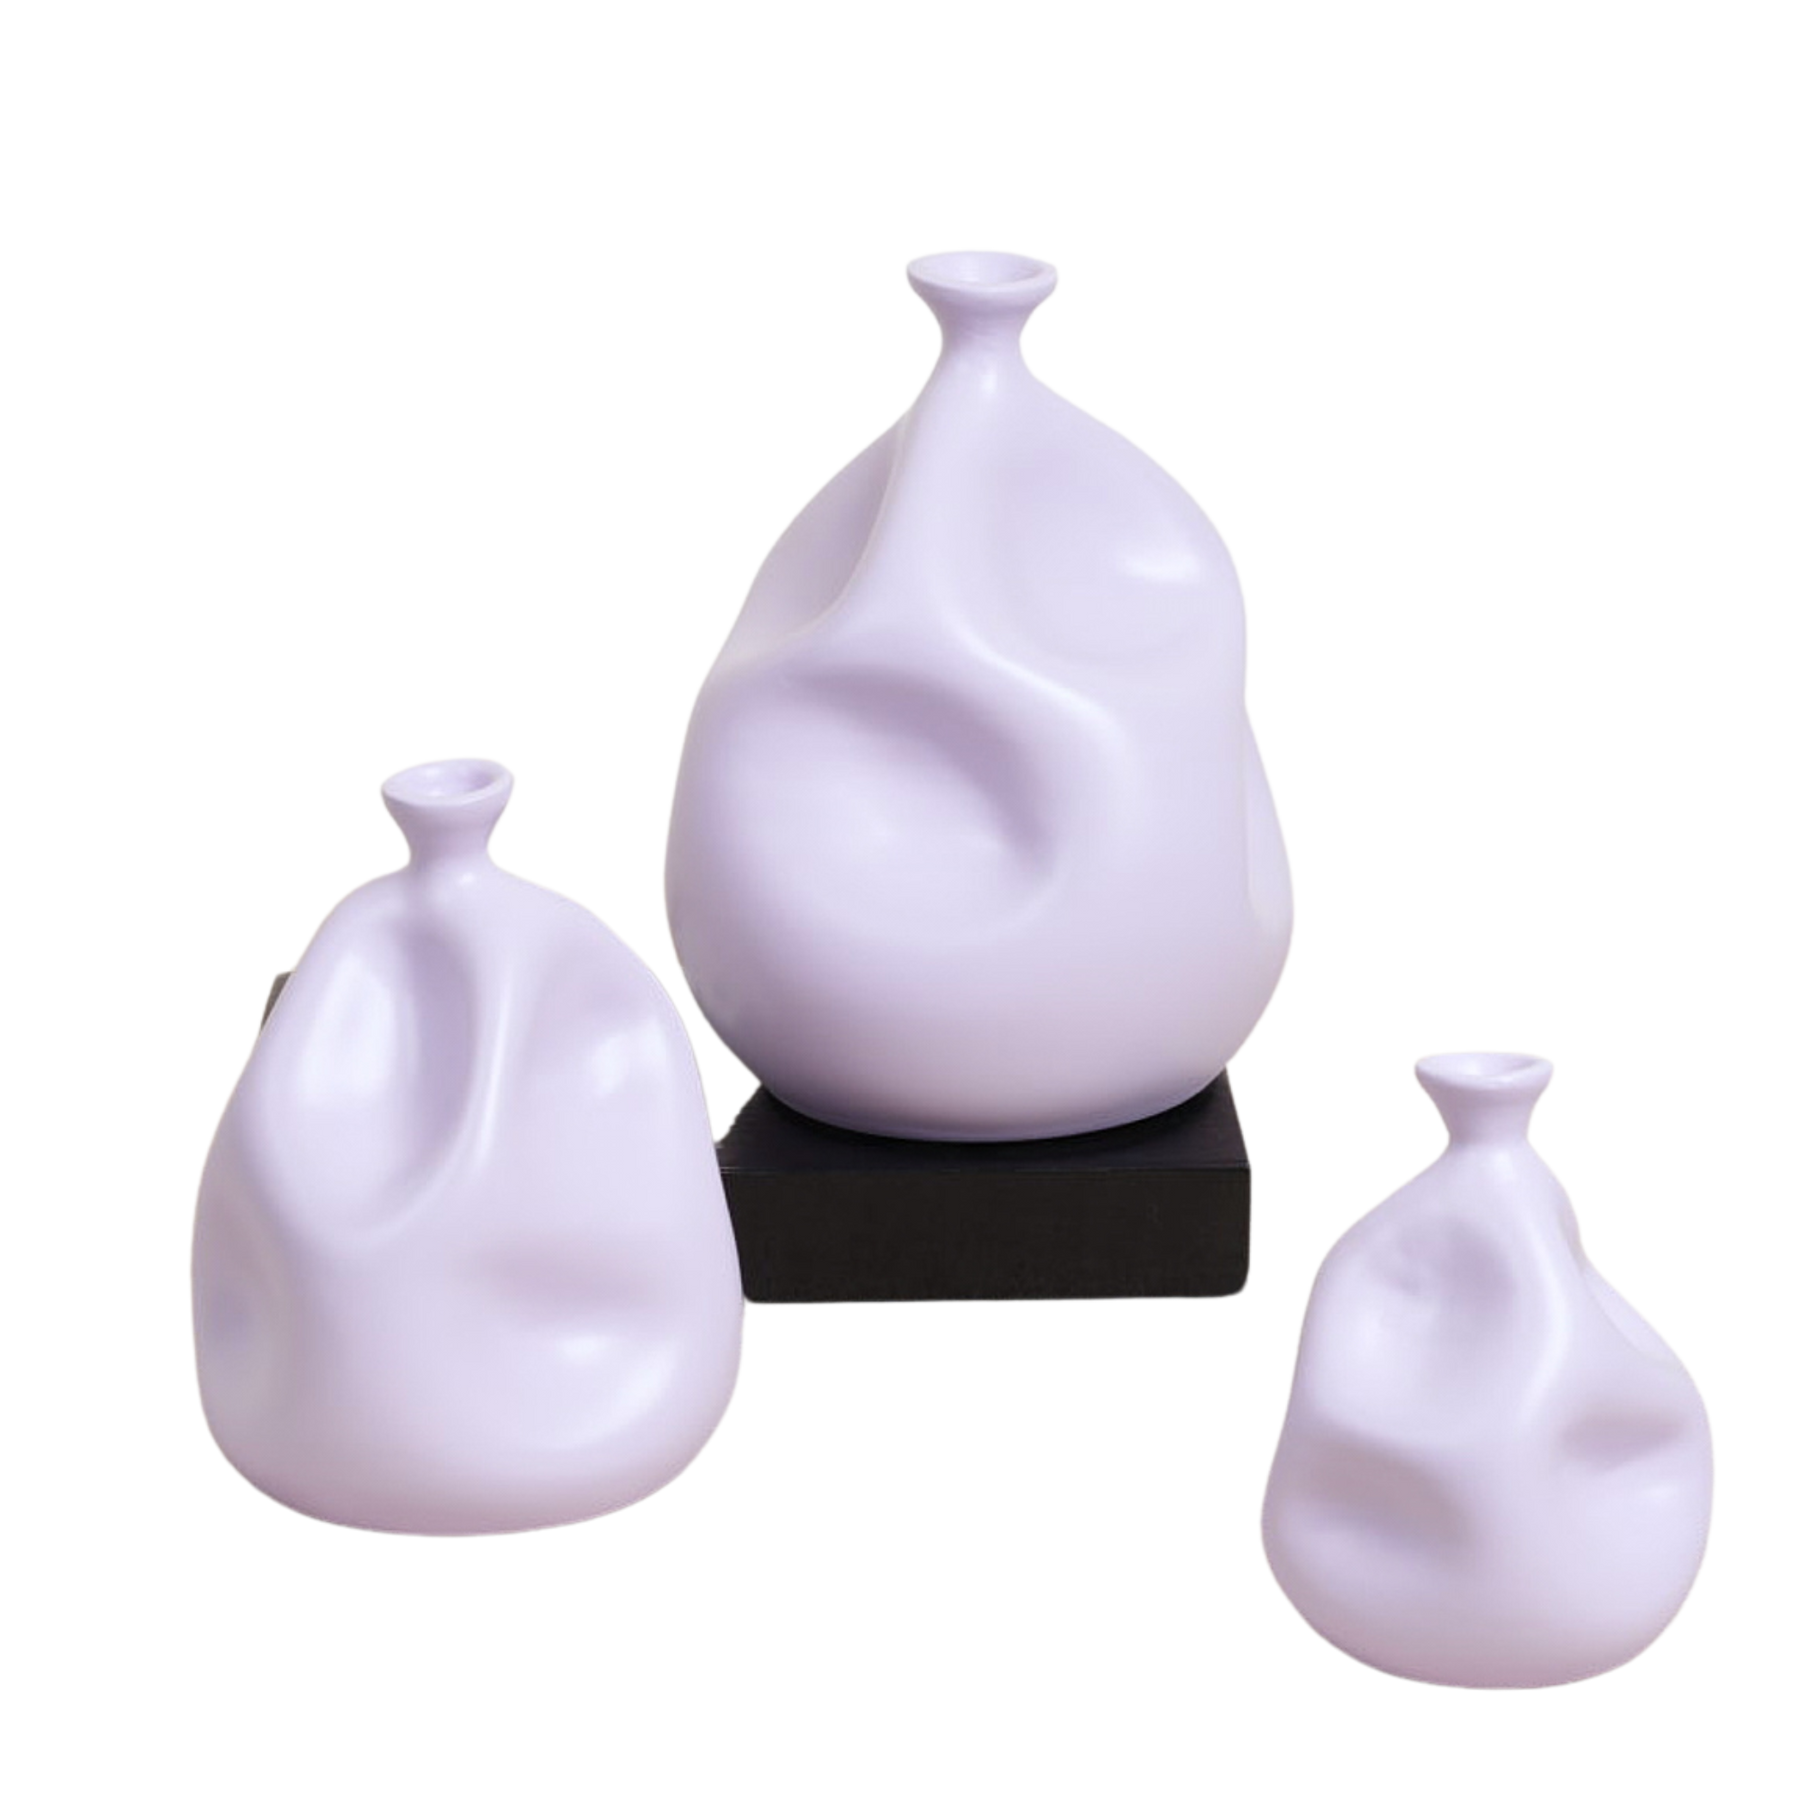 Balloon Vase: Medium Size